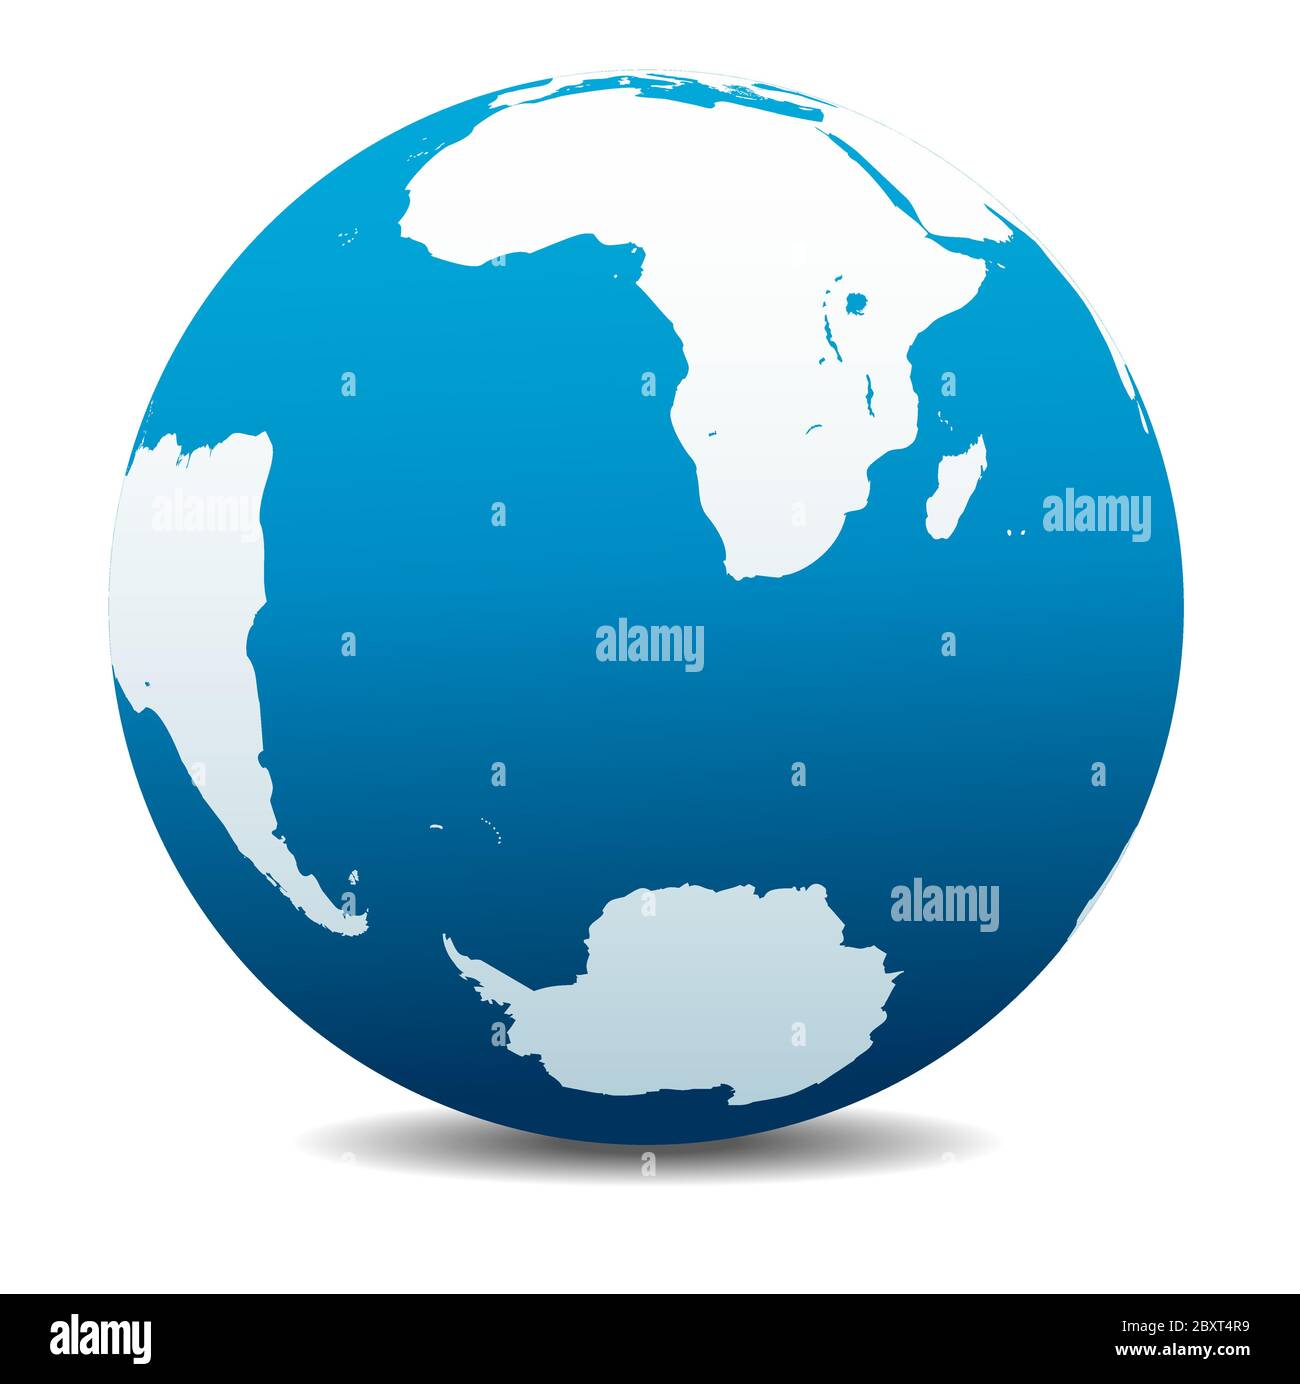 Afrique du Sud, Madagascar, Amérique du Sud et Antarctique, pôle Sud. Icône carte vectorielle du globe terrestre, Terre. Tous les éléments sont sur des calques individuels. Illustration de Vecteur